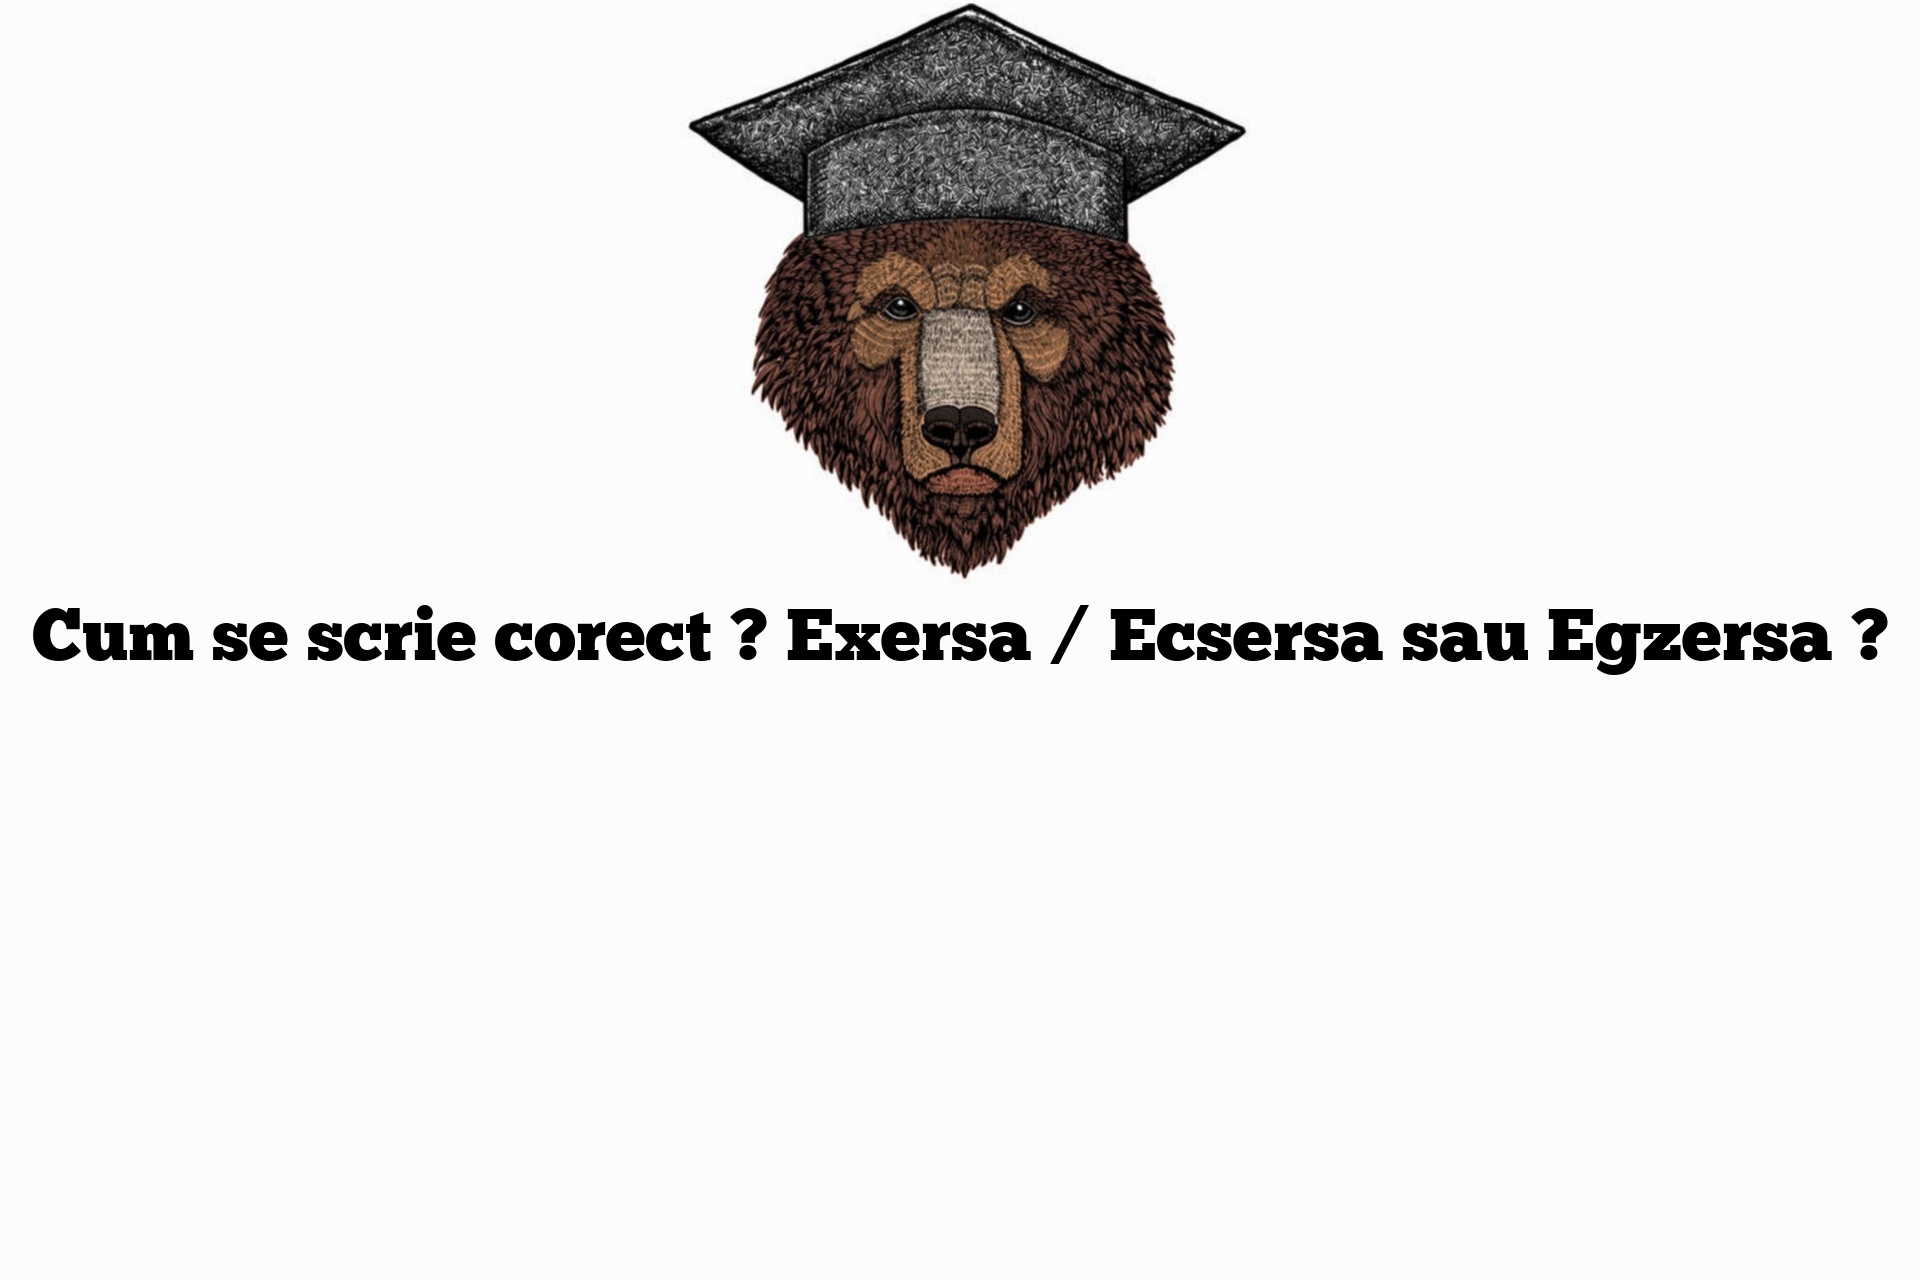 Cum se scrie corect ? Exersa / Ecsersa sau Egzersa ?